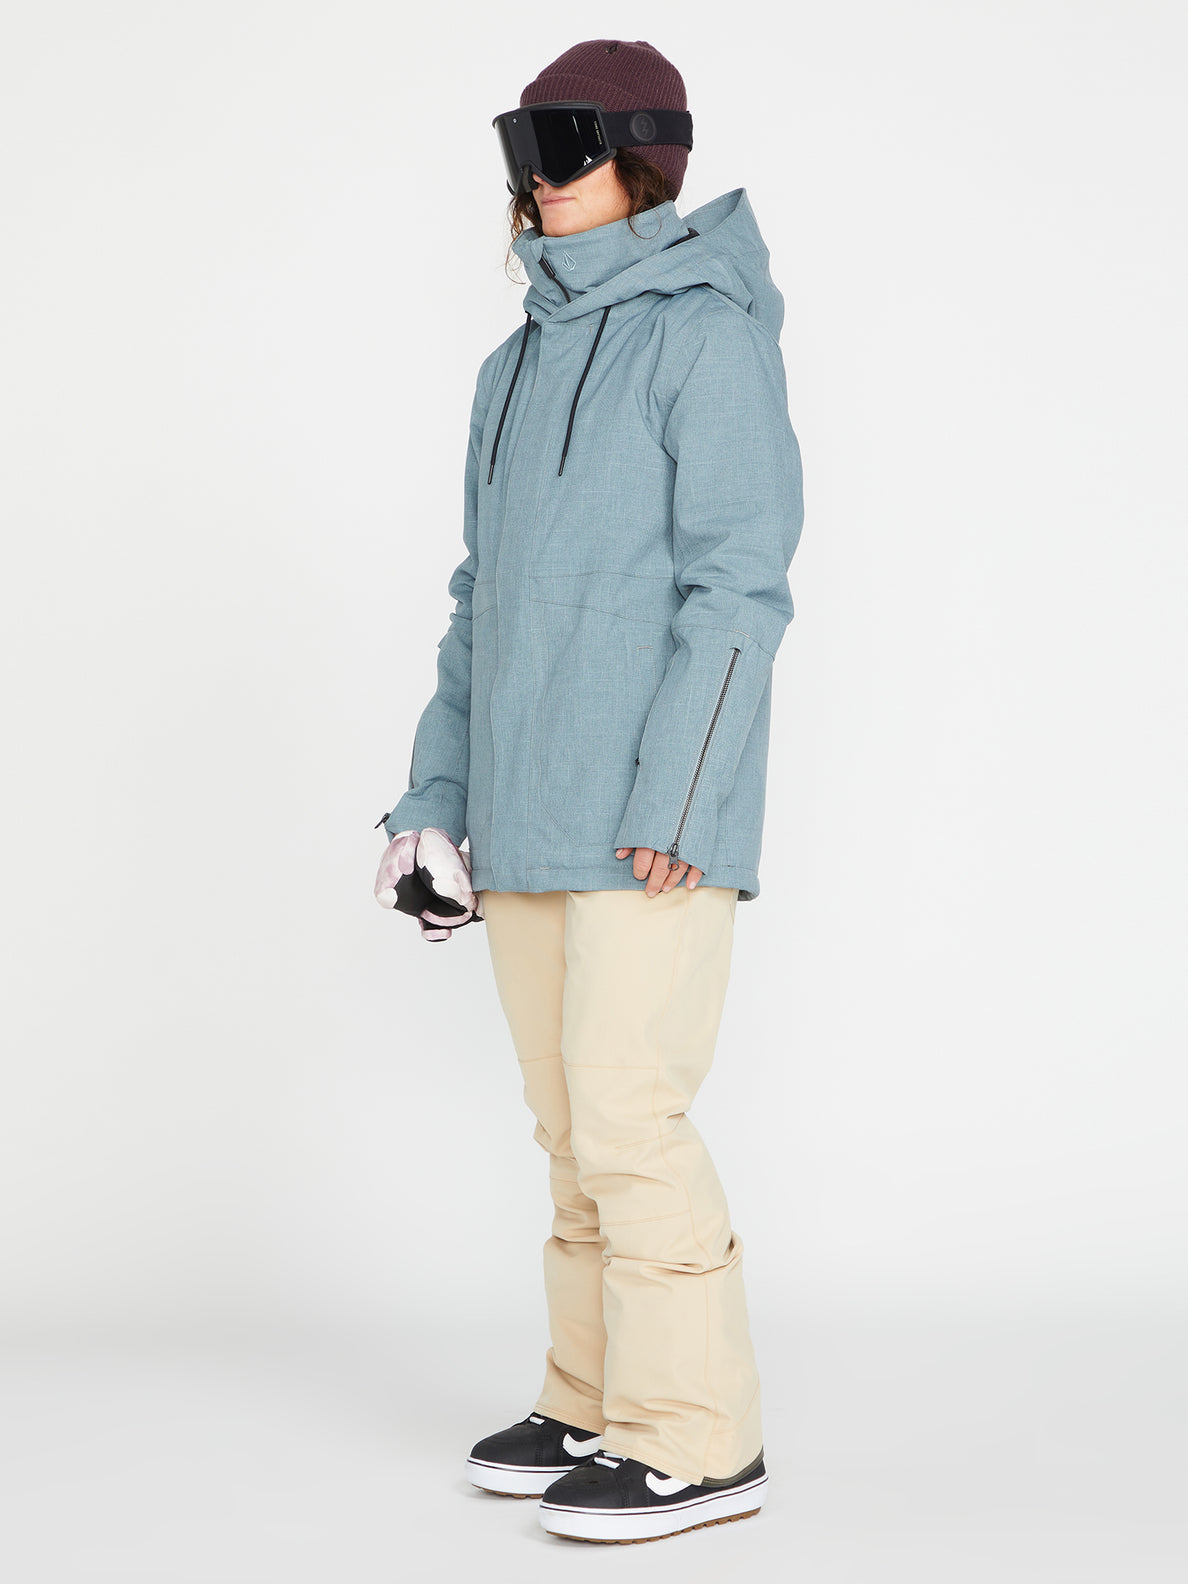 Pantalón de snowboard Mujer Volcom Swift Bib Overall - Sand | Pantalones de snowboard Mujer | Snowboard Shop | Volcom Shop | surfdevils.com